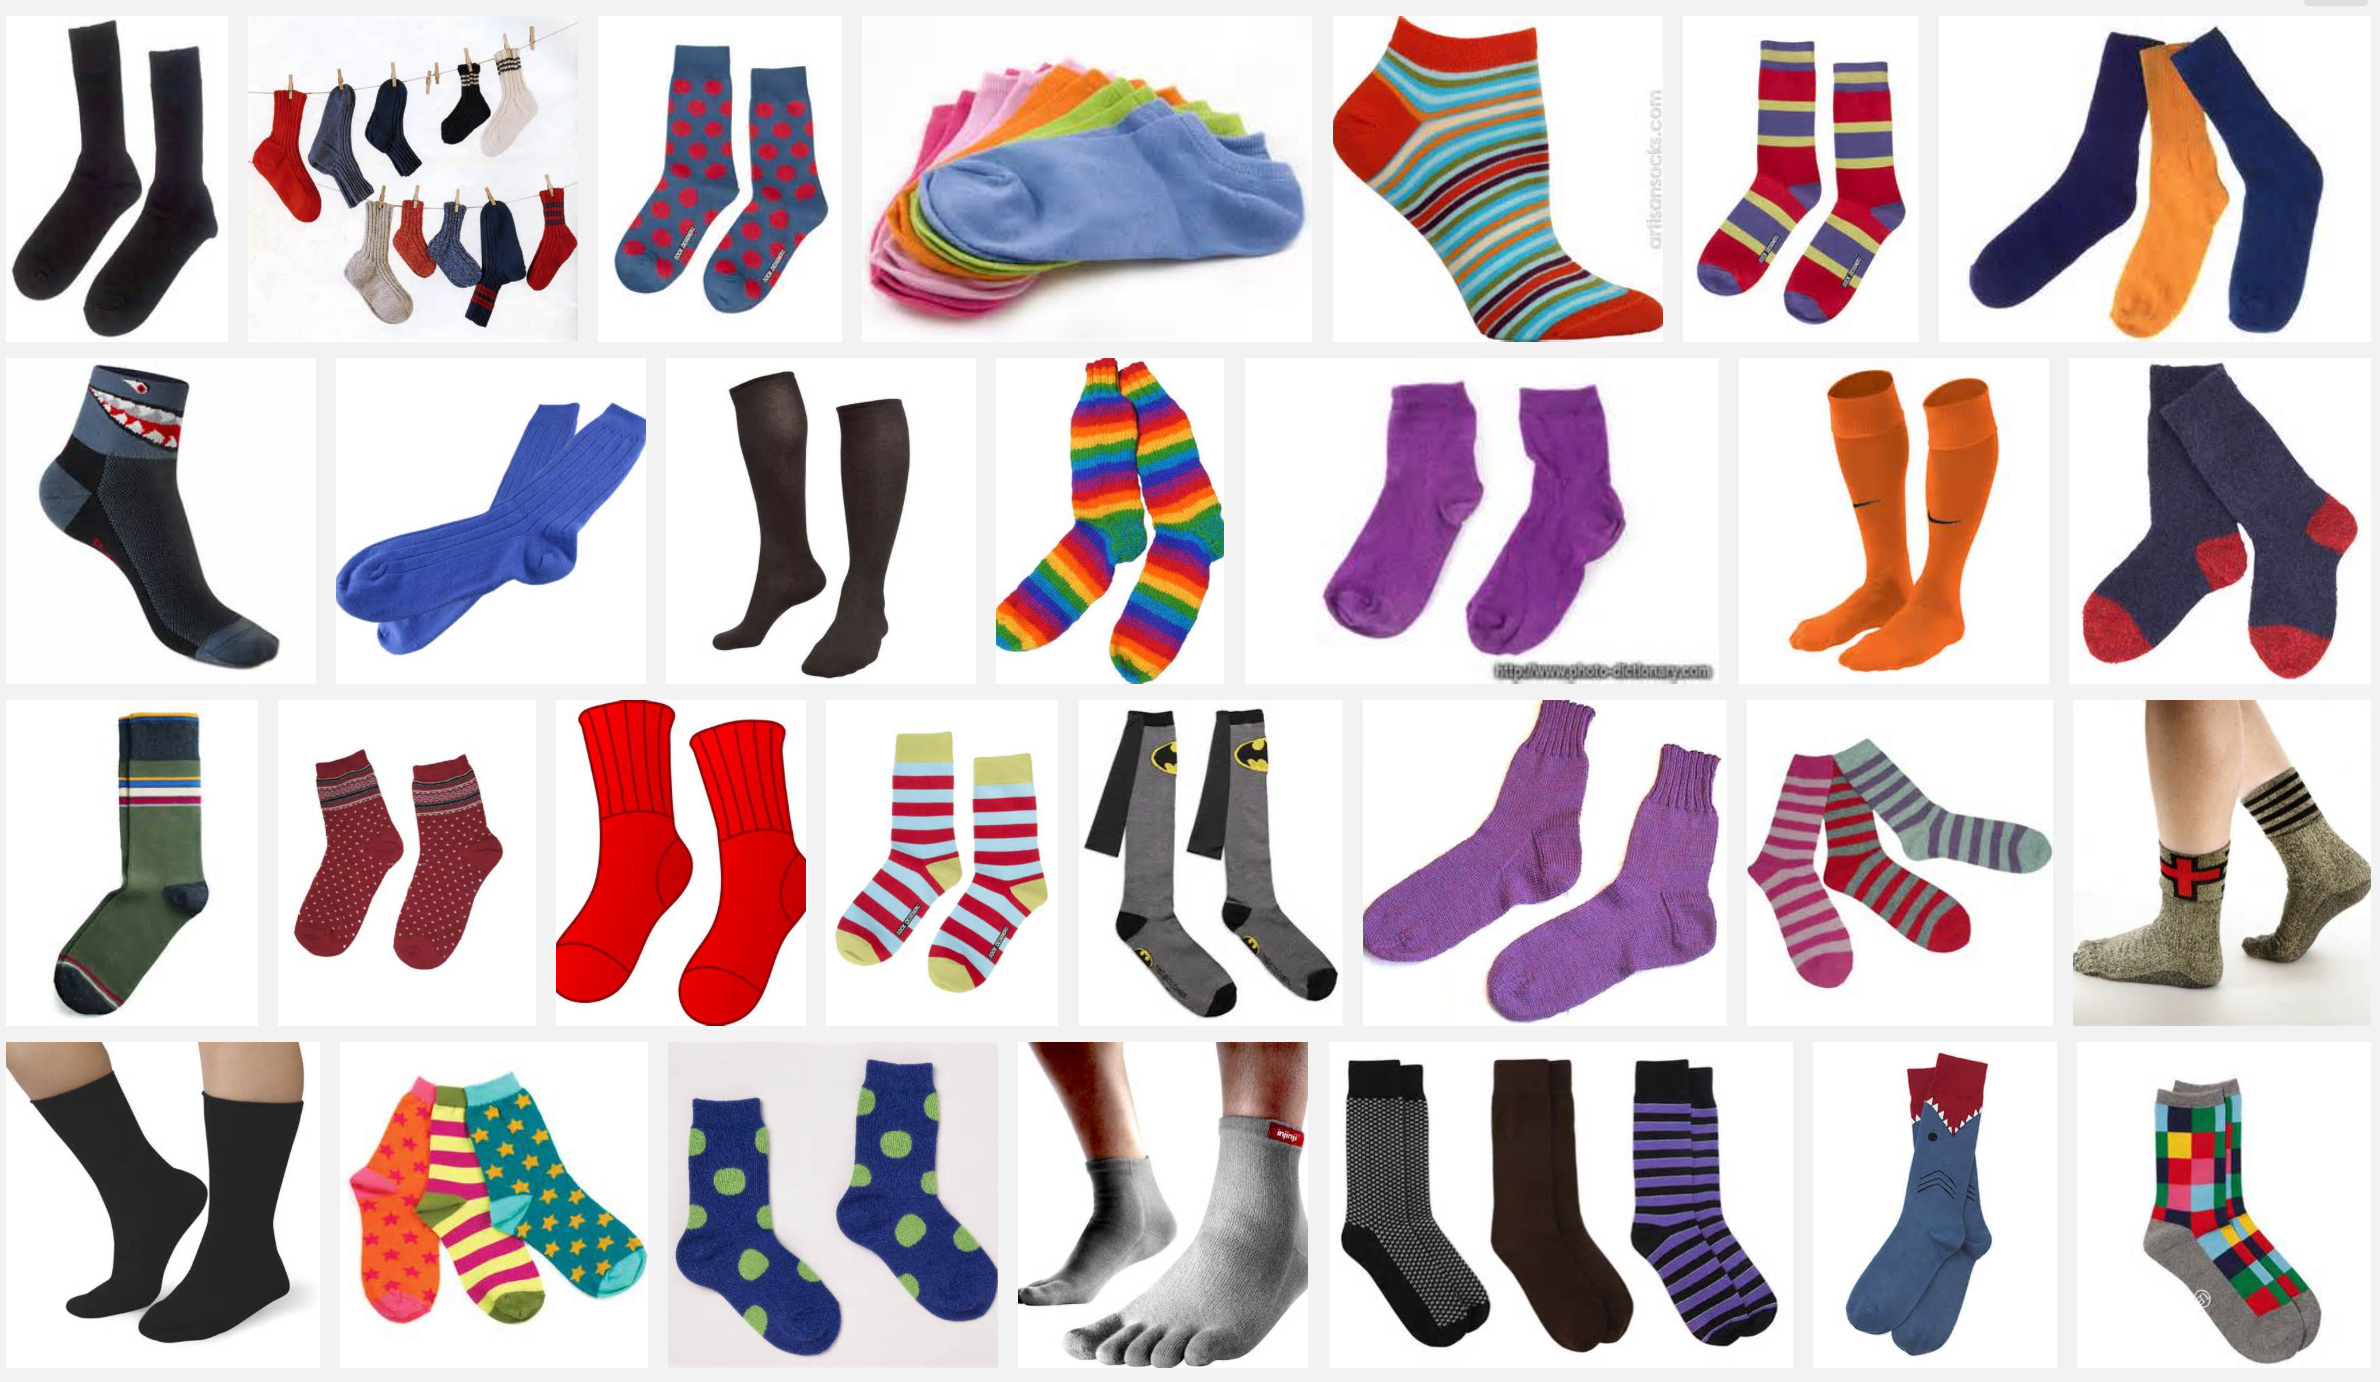 ddg-search-socks